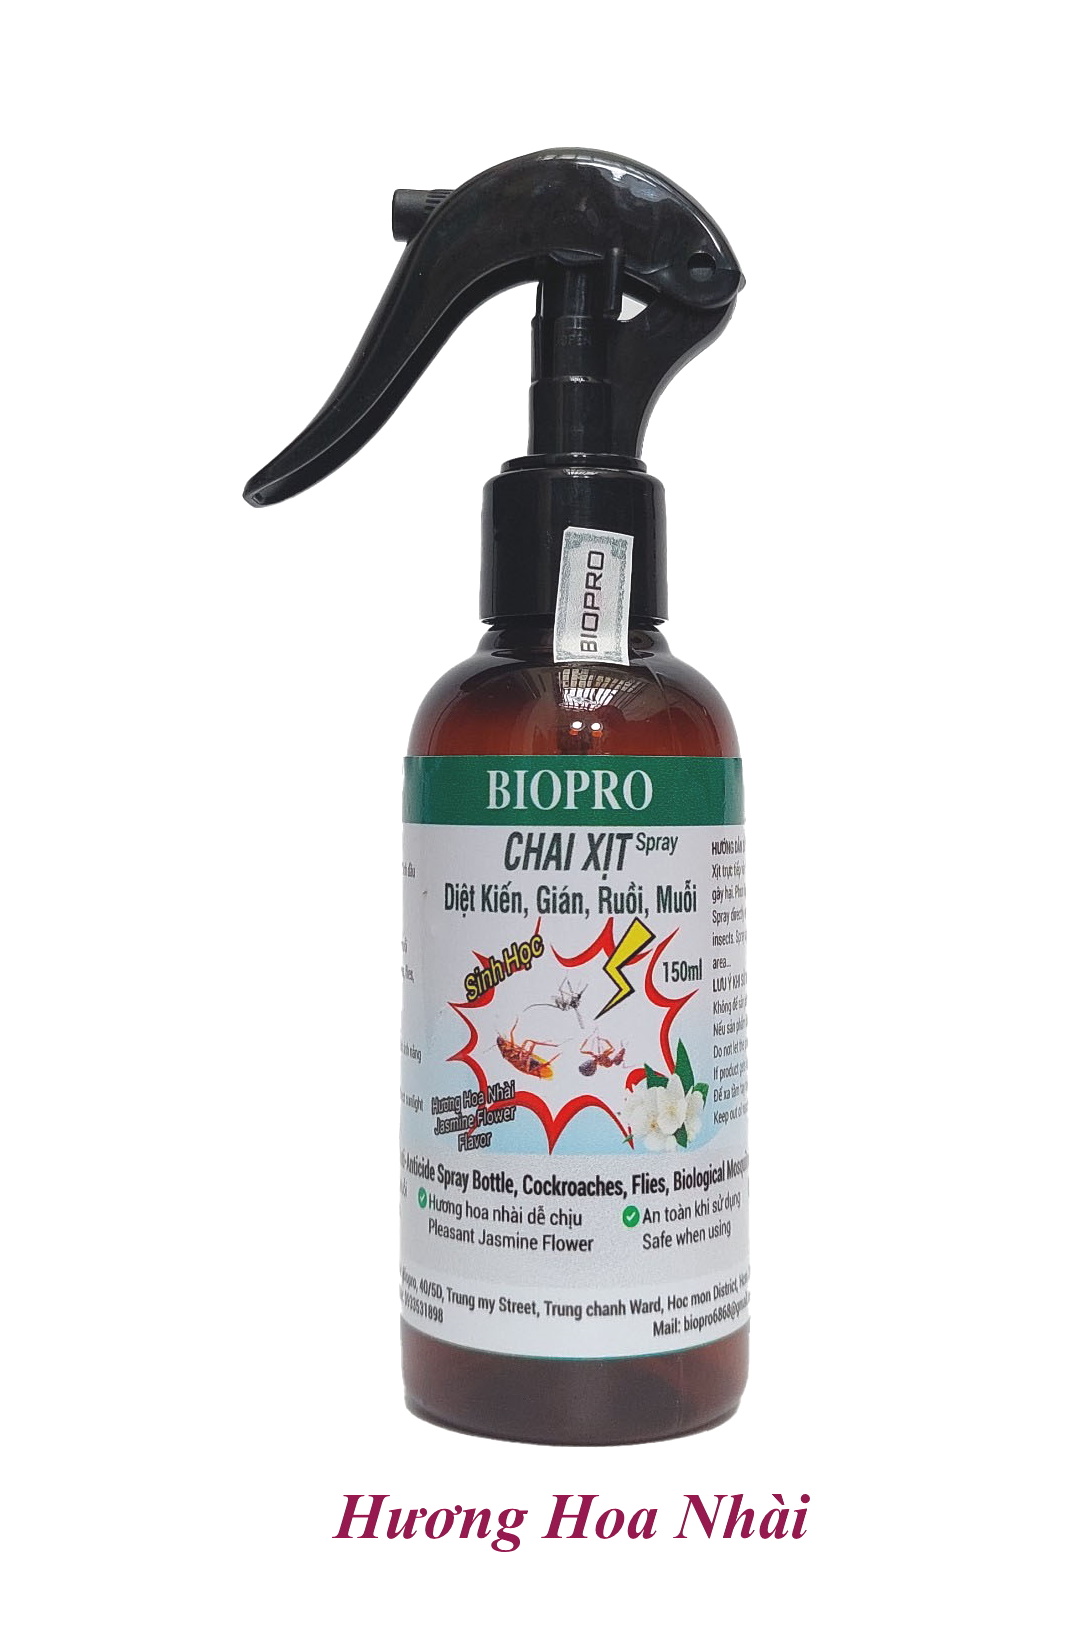 Chai dạng xịt 150ml. Thuốc Diệt kiến Diệt gián Diệt ruồi Diệt muỗi Sinh học Biopro an toàn hiệu quả Nhiều hương lựa chọn